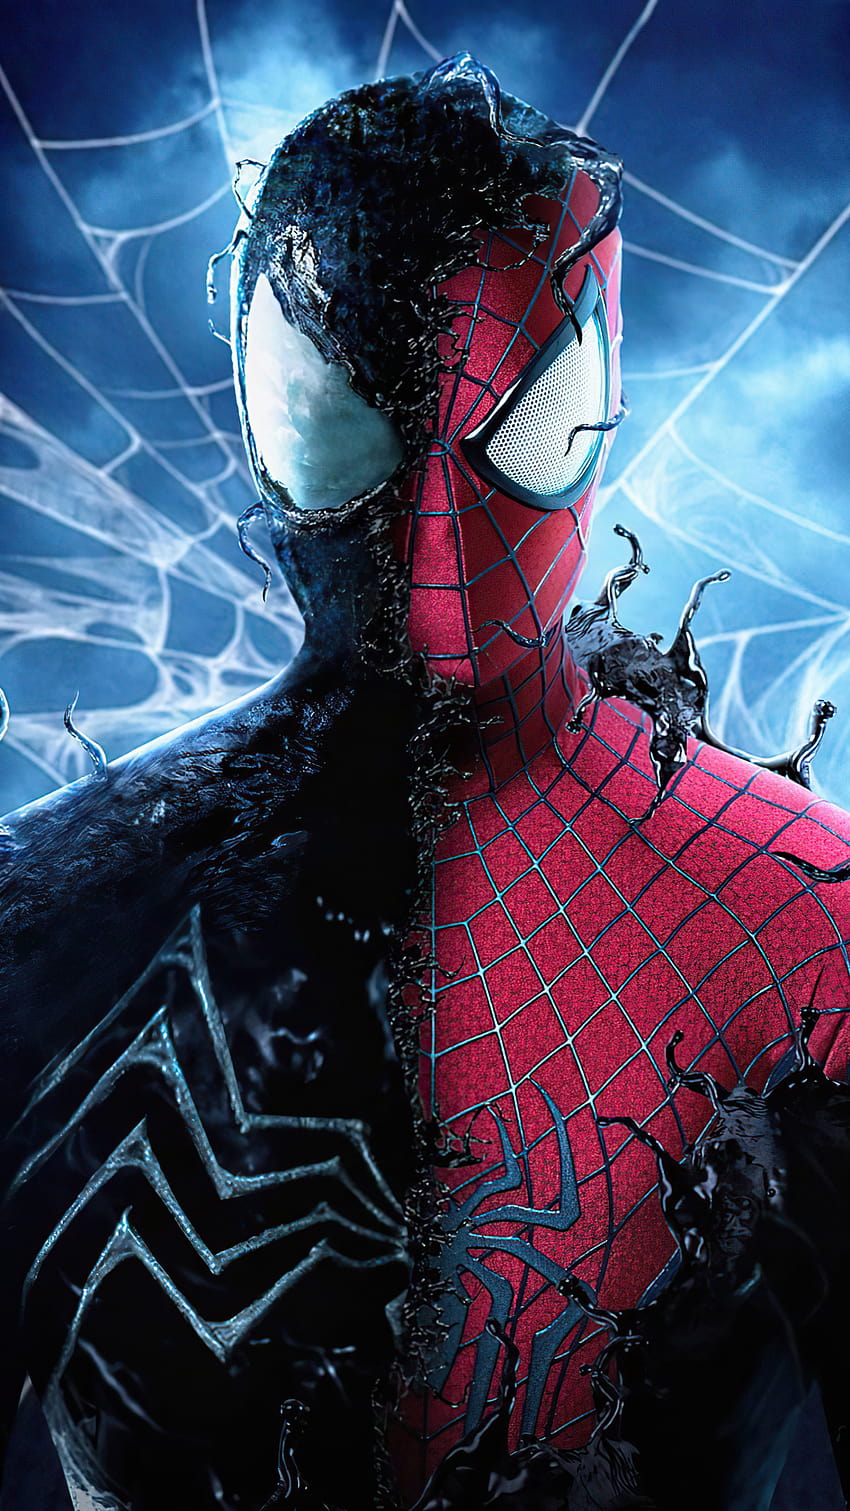 1080x1920 Homem-Aranha com o Symbiote Iphone 7,6s,6 Plus, Pixel xl, One Plus 3,3t,5, Planos de fundo e traje simbionte do homem-aranha Papel de parede de celular HD